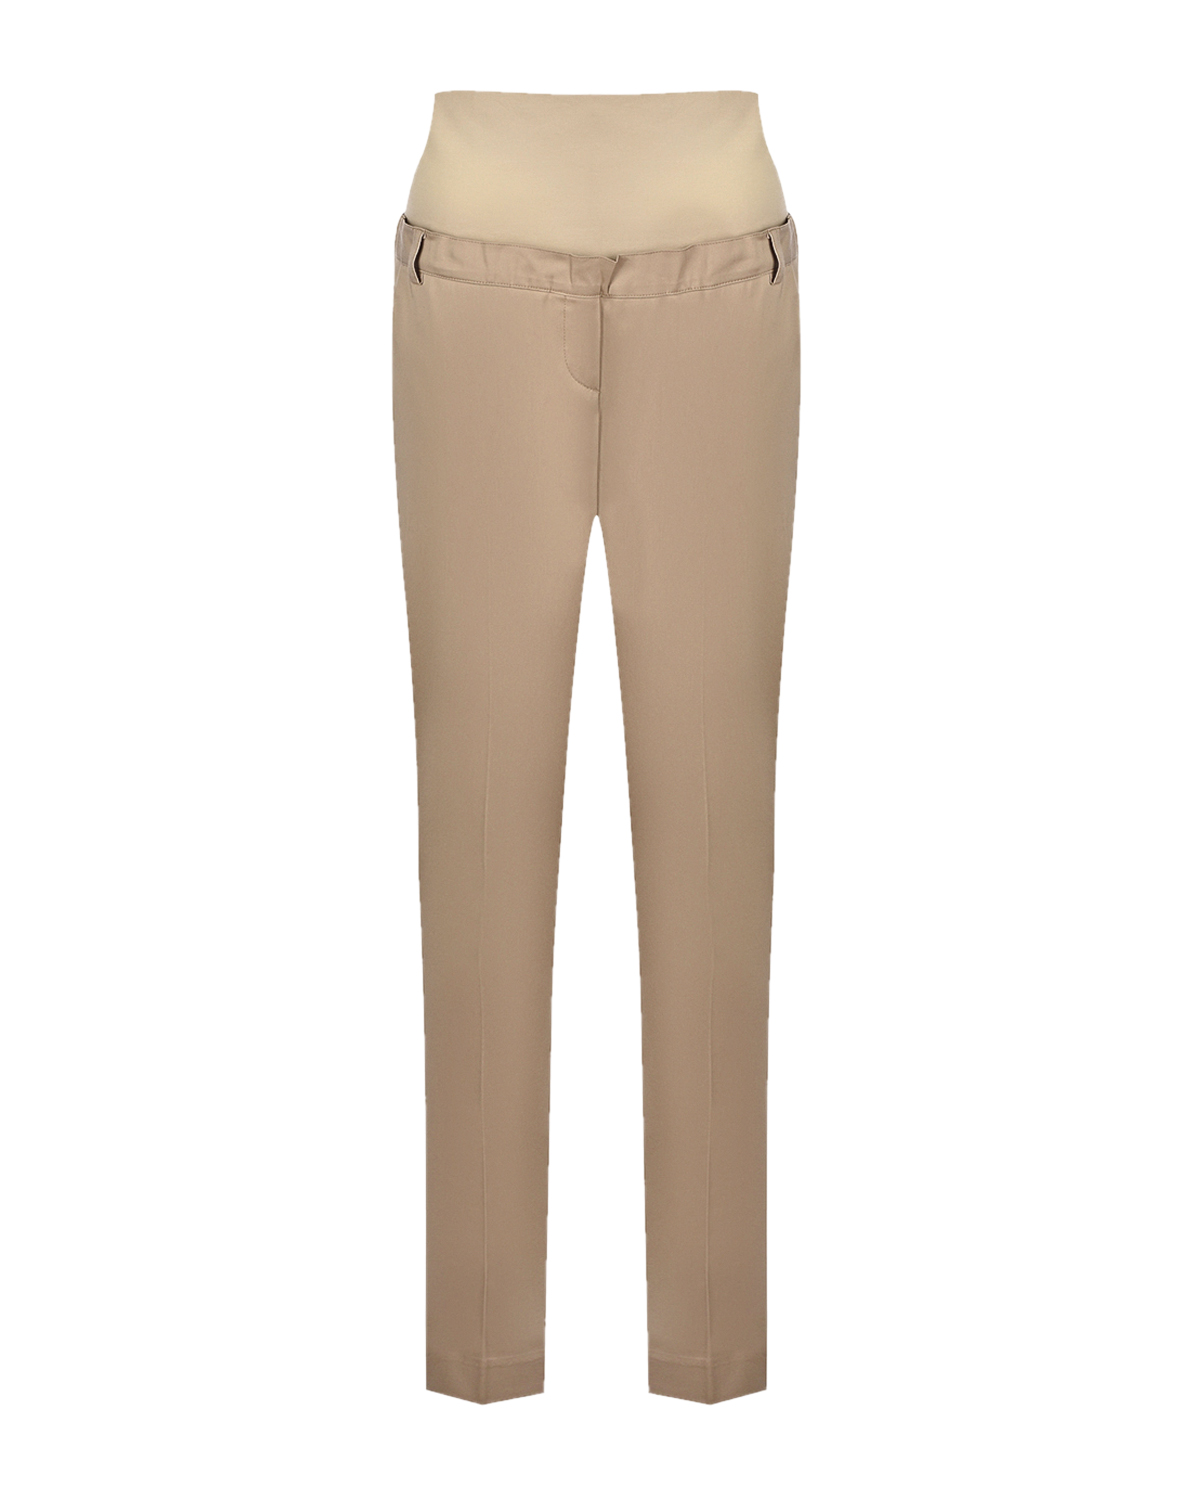 Бежевые брюки для беременных Attesa, размер 38, цвет бежевый